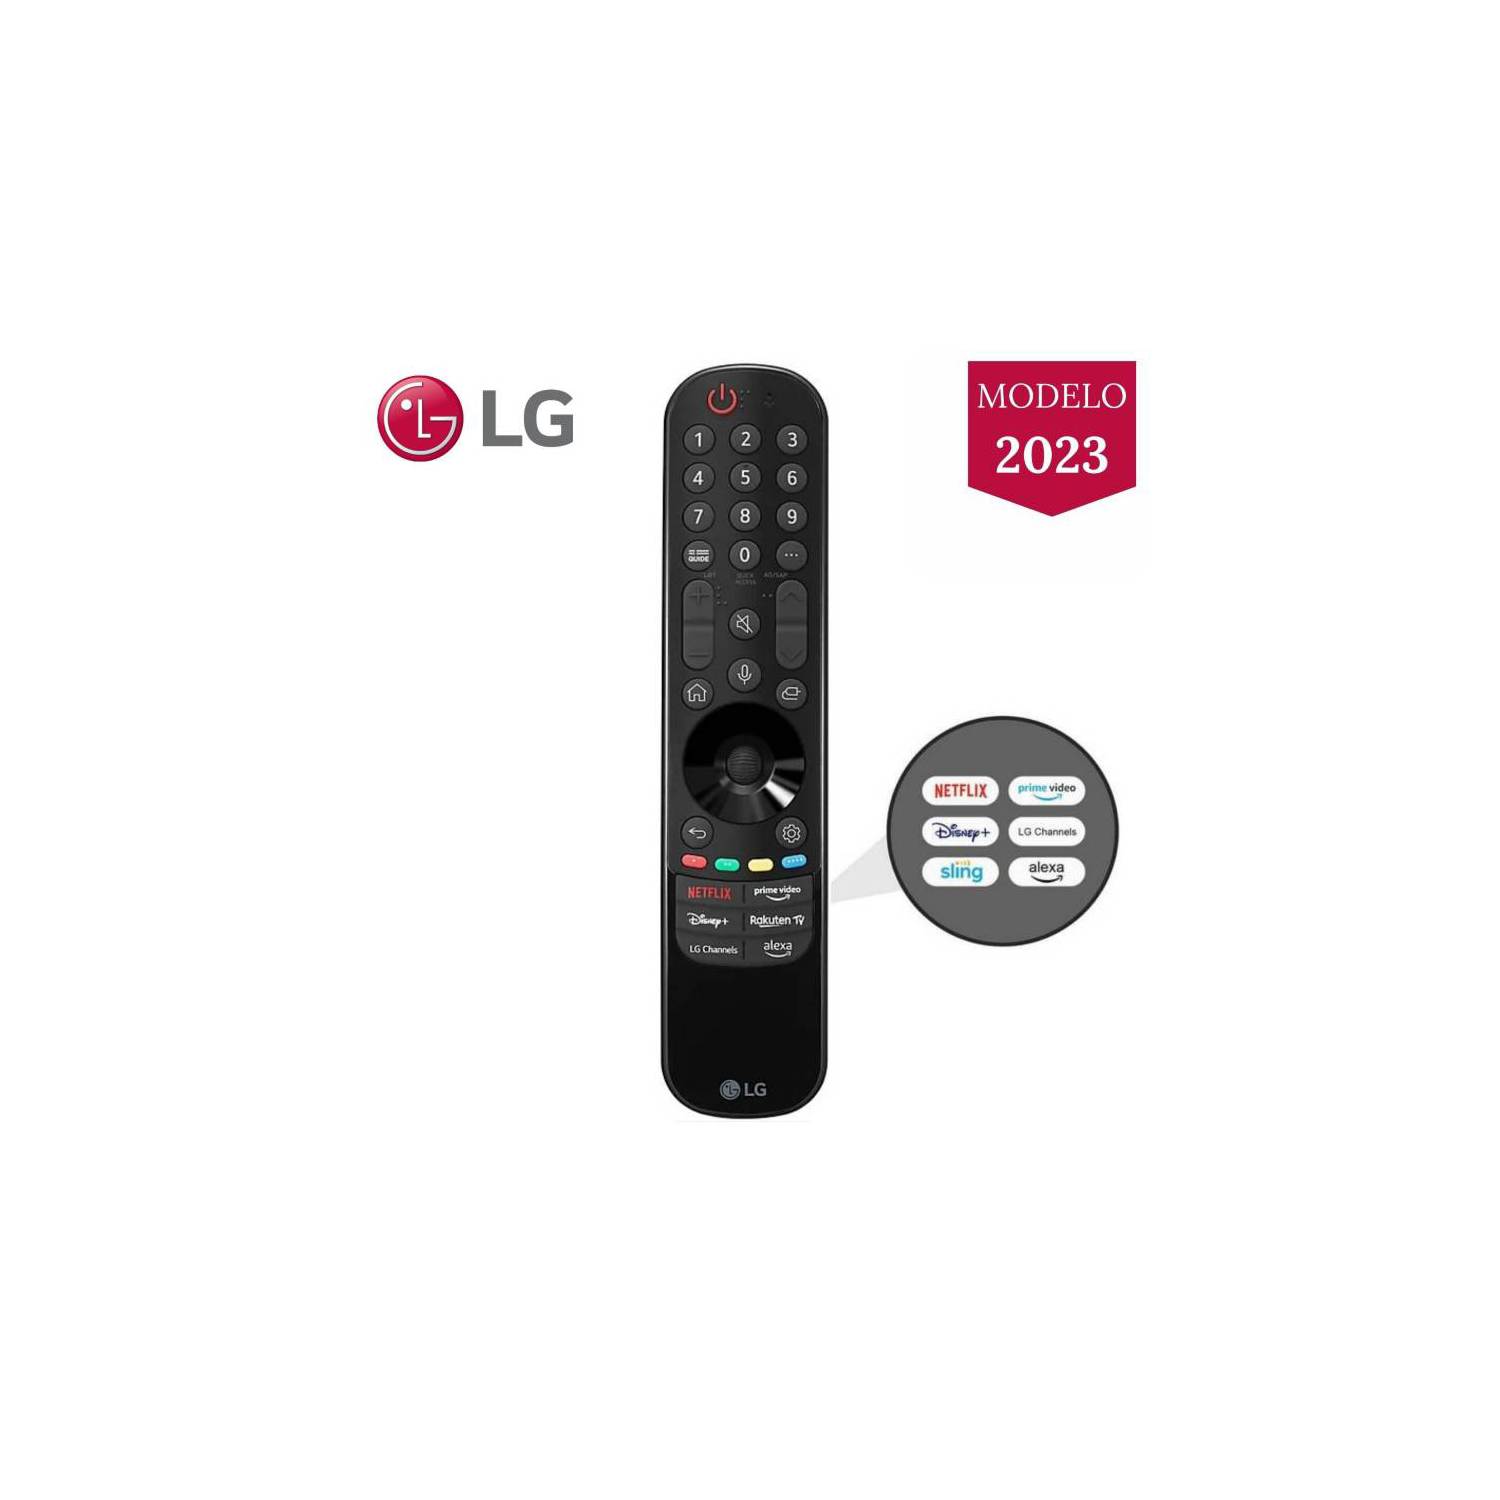 Gethex  Control Magic LG MR23GN Con Botón Alexa Y LG Channels Modelo 2023